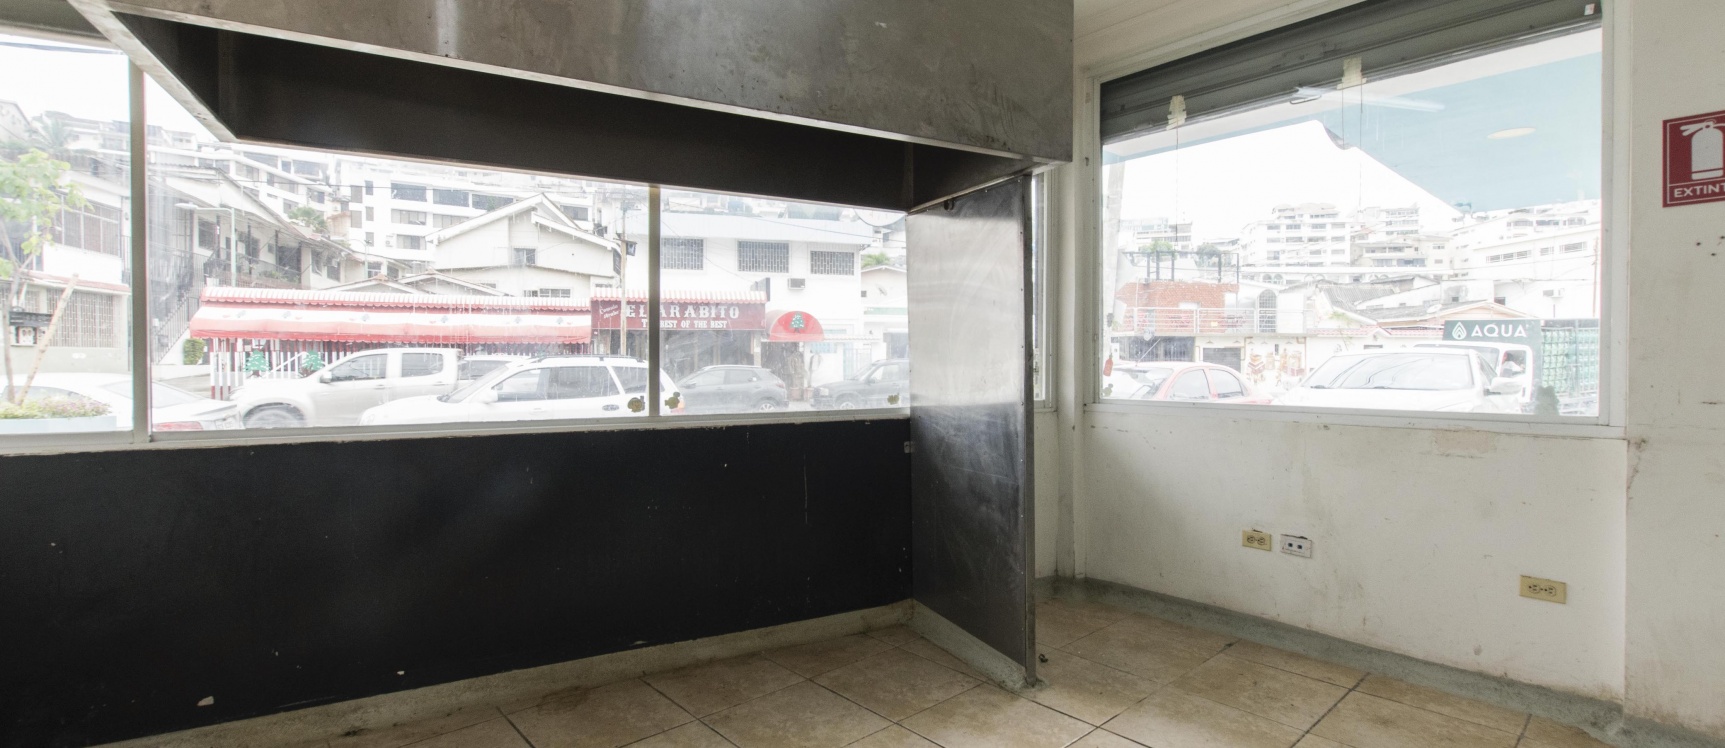 GeoBienes - Local comercial en alquiler, restaurante, bar, farmacia, uso comercial en Urdesa - Plusvalia Guayaquil Casas de venta y alquiler Inmobiliaria Ecuador